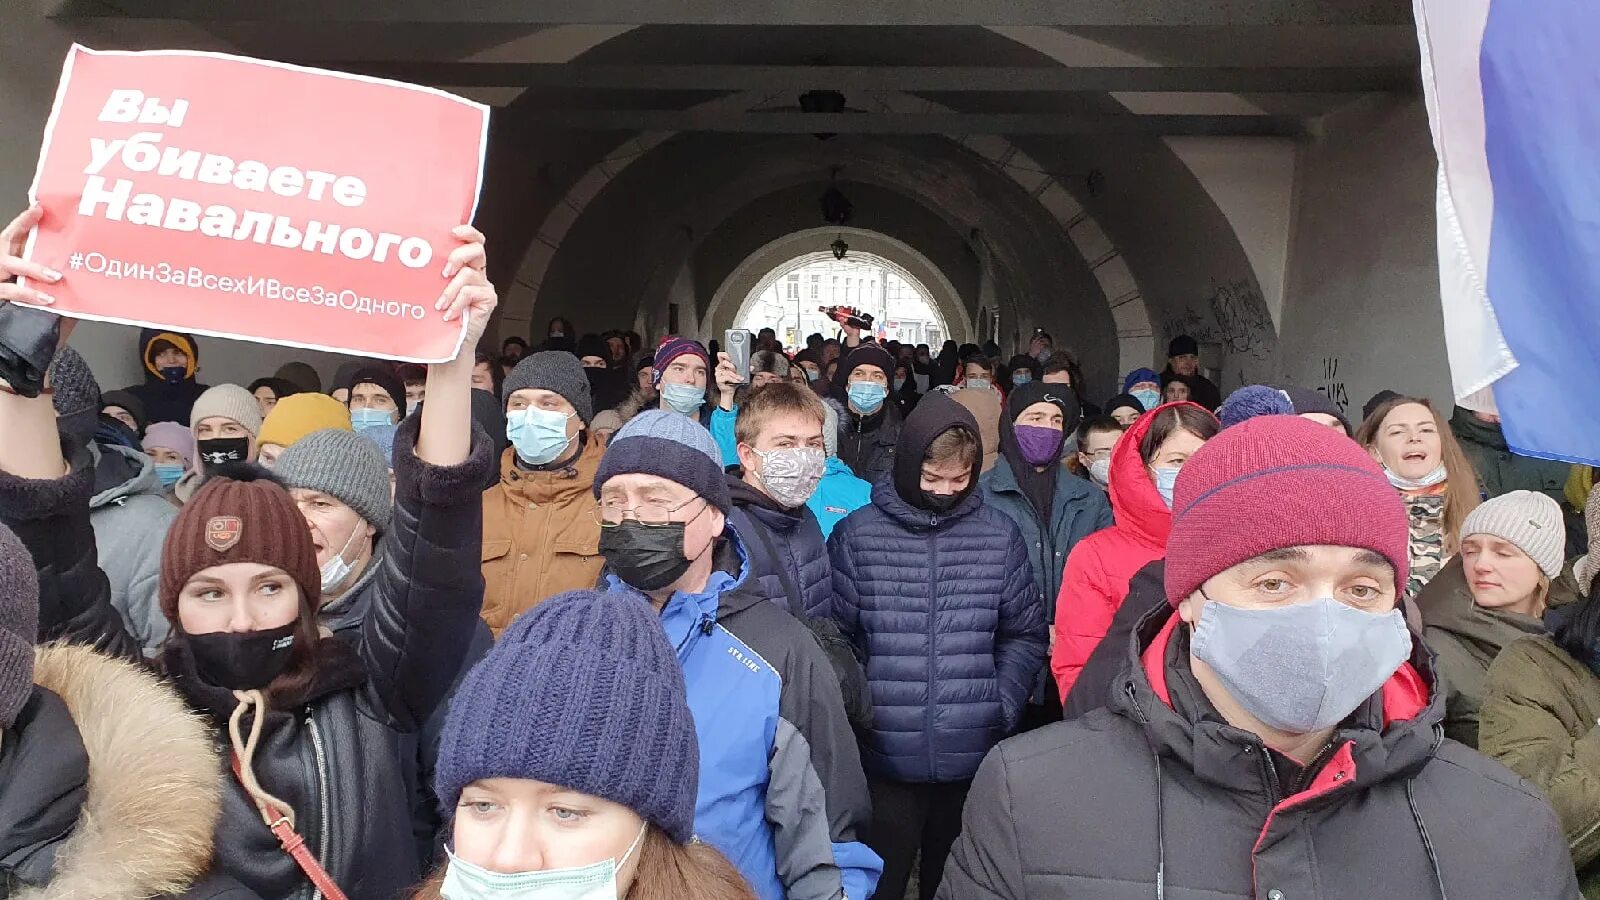 Новости прямой эфир прямо сейчас 1. Митинги Навального 2021. Митинги 23 января 2021 года. Митинг Ярославль. Митинг свободу Навальному.